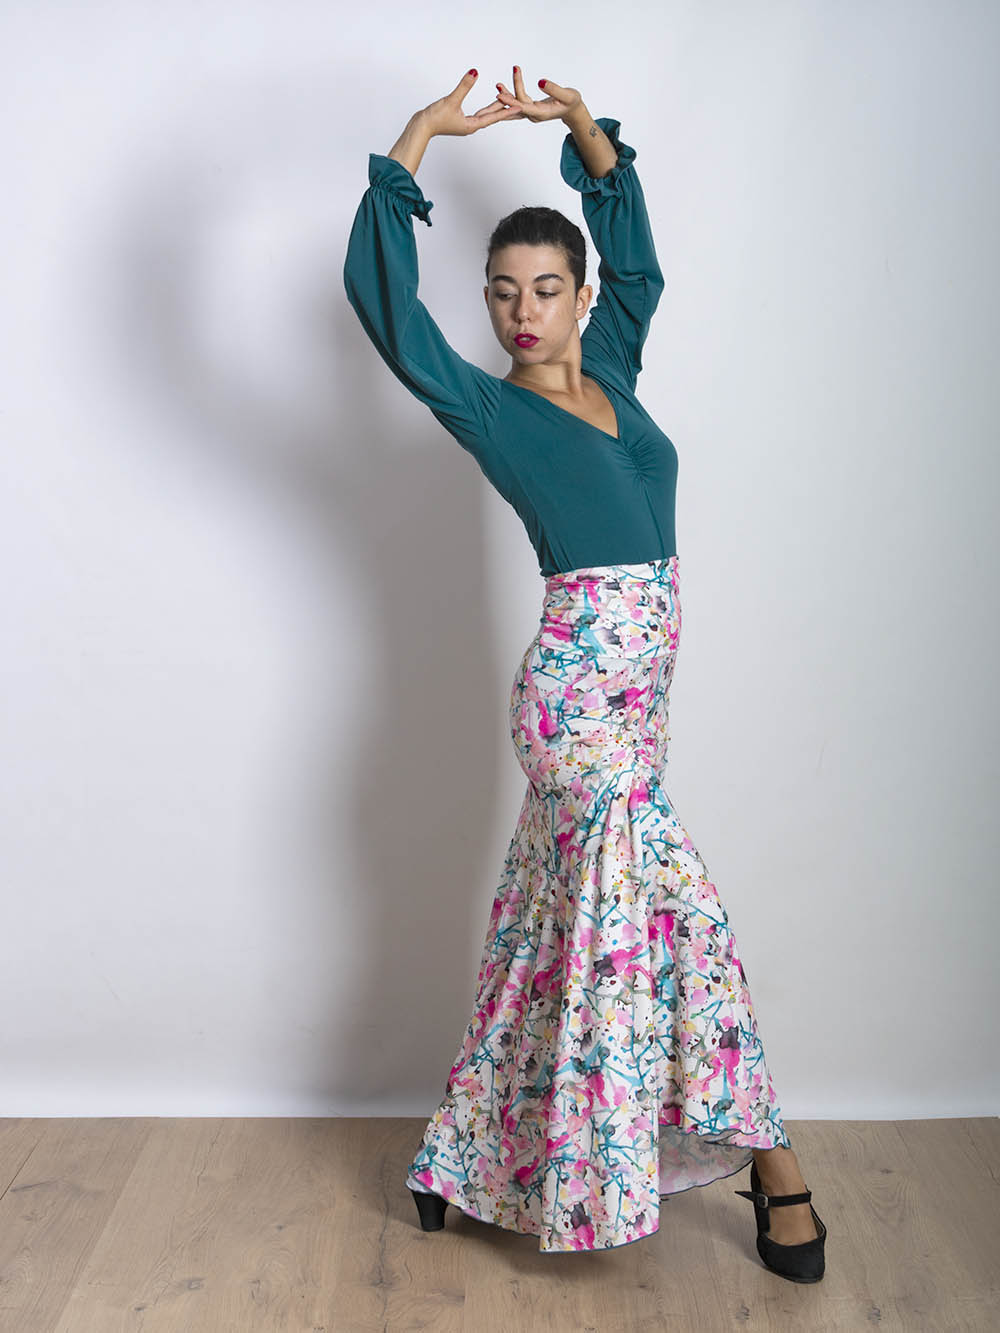 Falda Gitana de Paralola en estampado Pollock. La blusa es modelo Tablao en verde esmeralda.